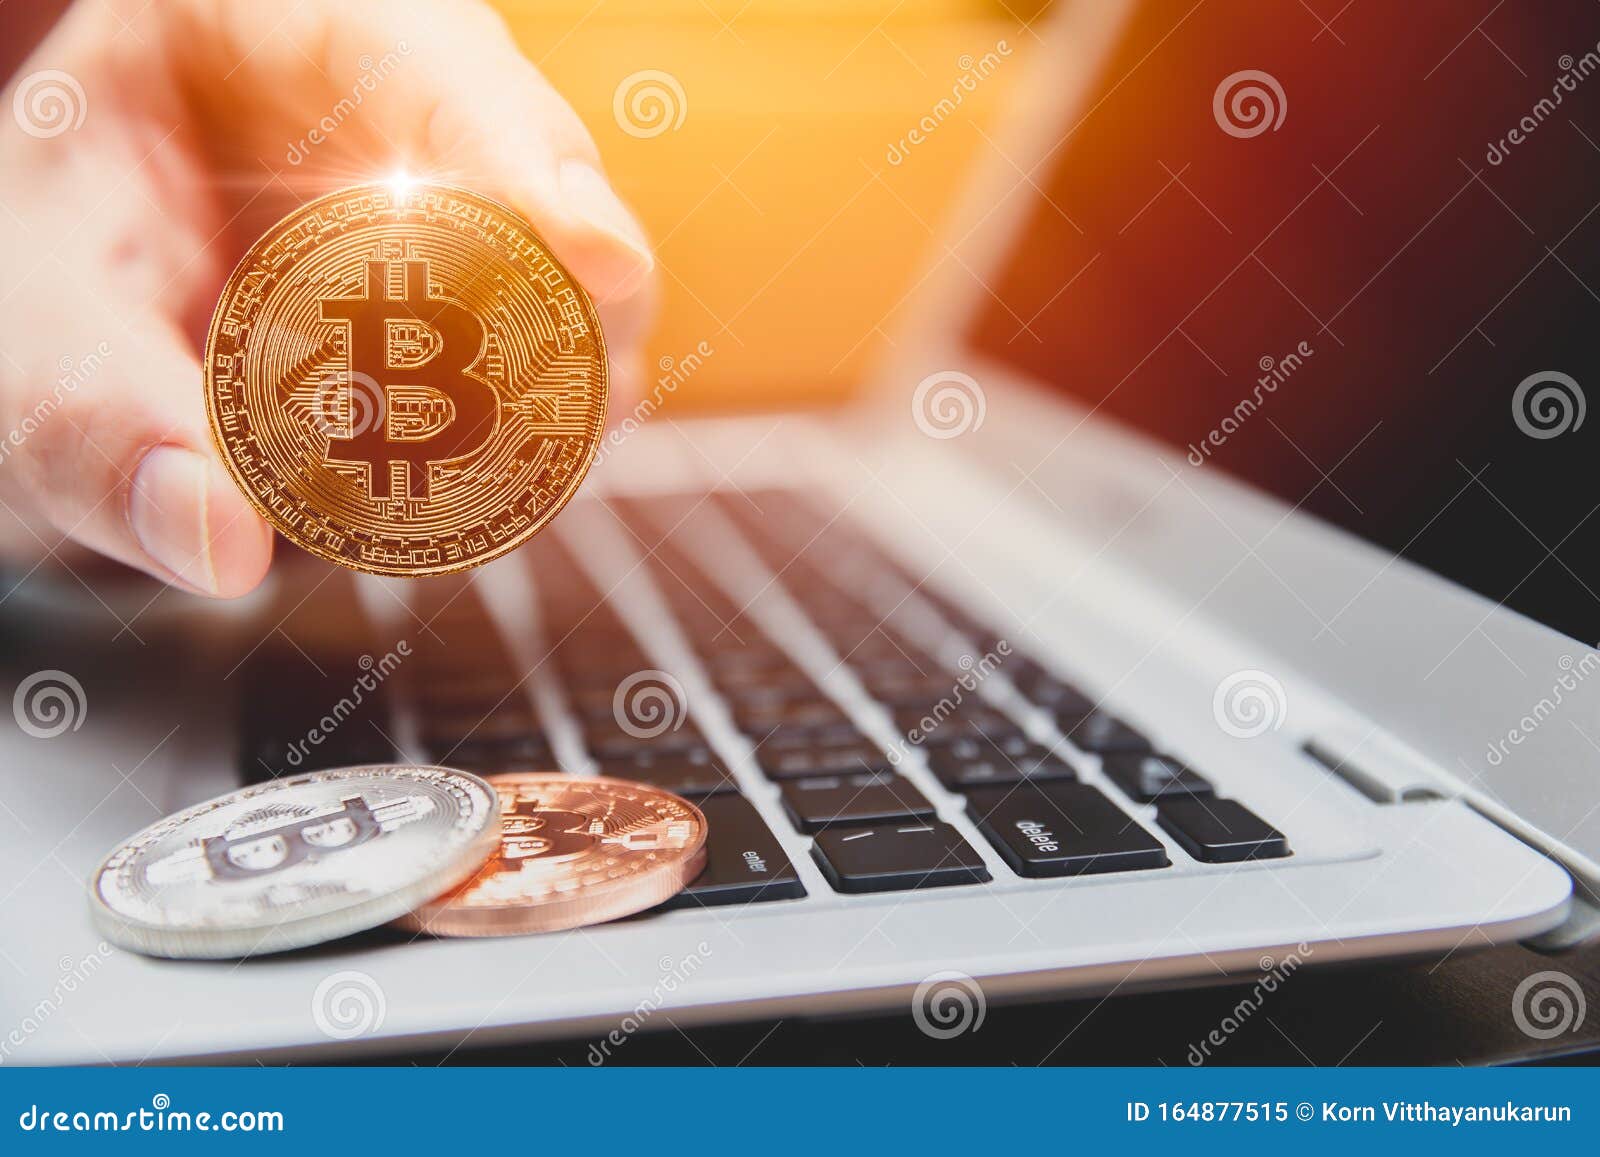 Биткоин с ноутбука how to convert bitcoin and litecoin to cash on coinbase